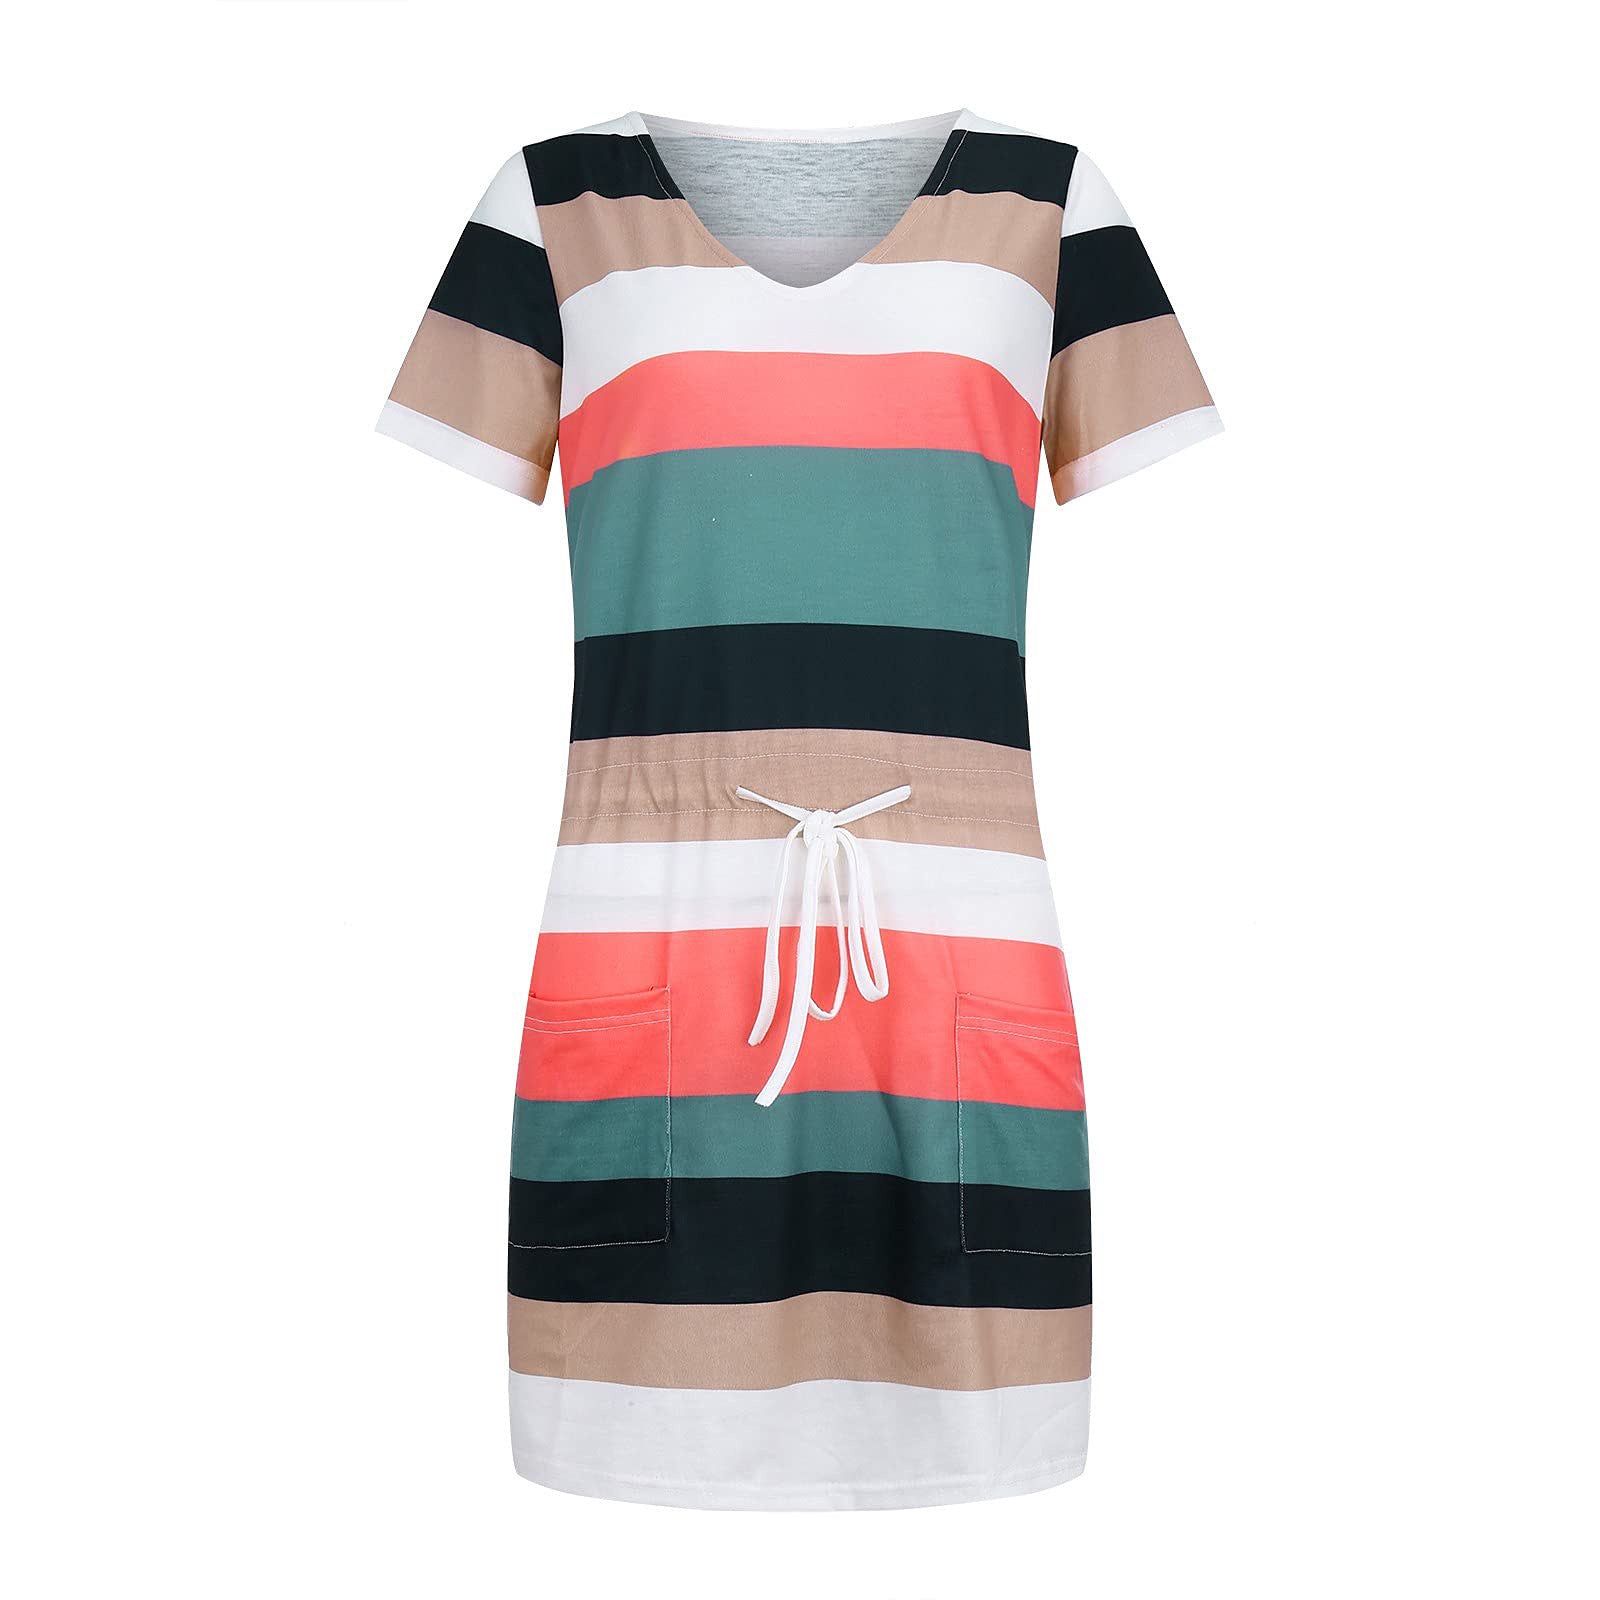 - Striped Short-sleeved Women's Summer Dress - womens dress at TFC&H Co.